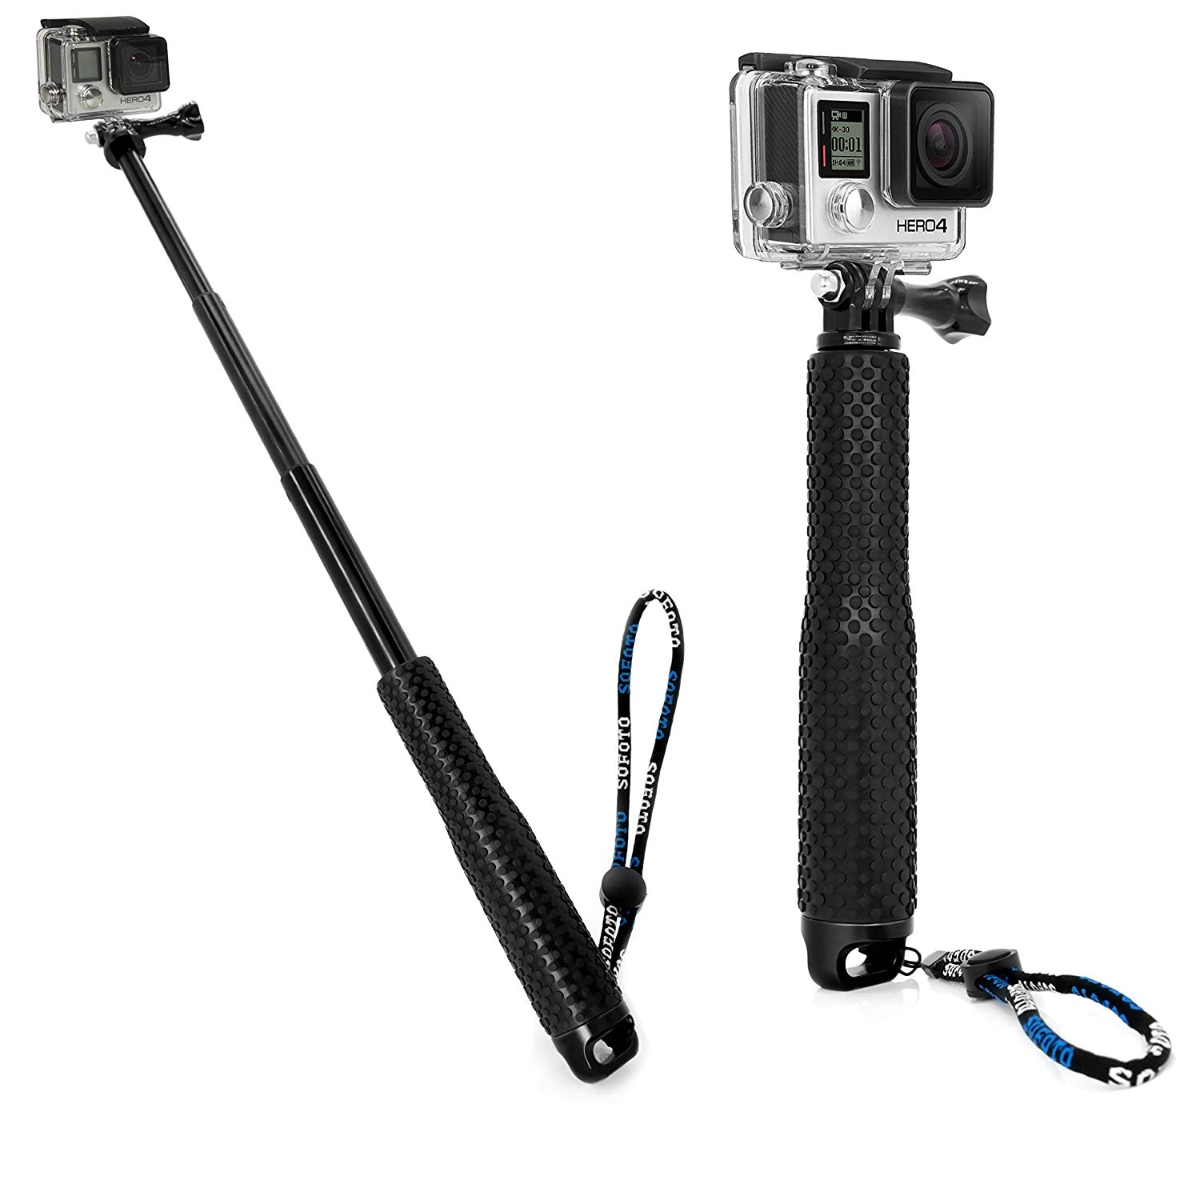 verdieping leerling Aanhankelijk Selfie Stick with Waterproof Handheld Adjustable Extension Pole for Action  Camera in Bangladesh